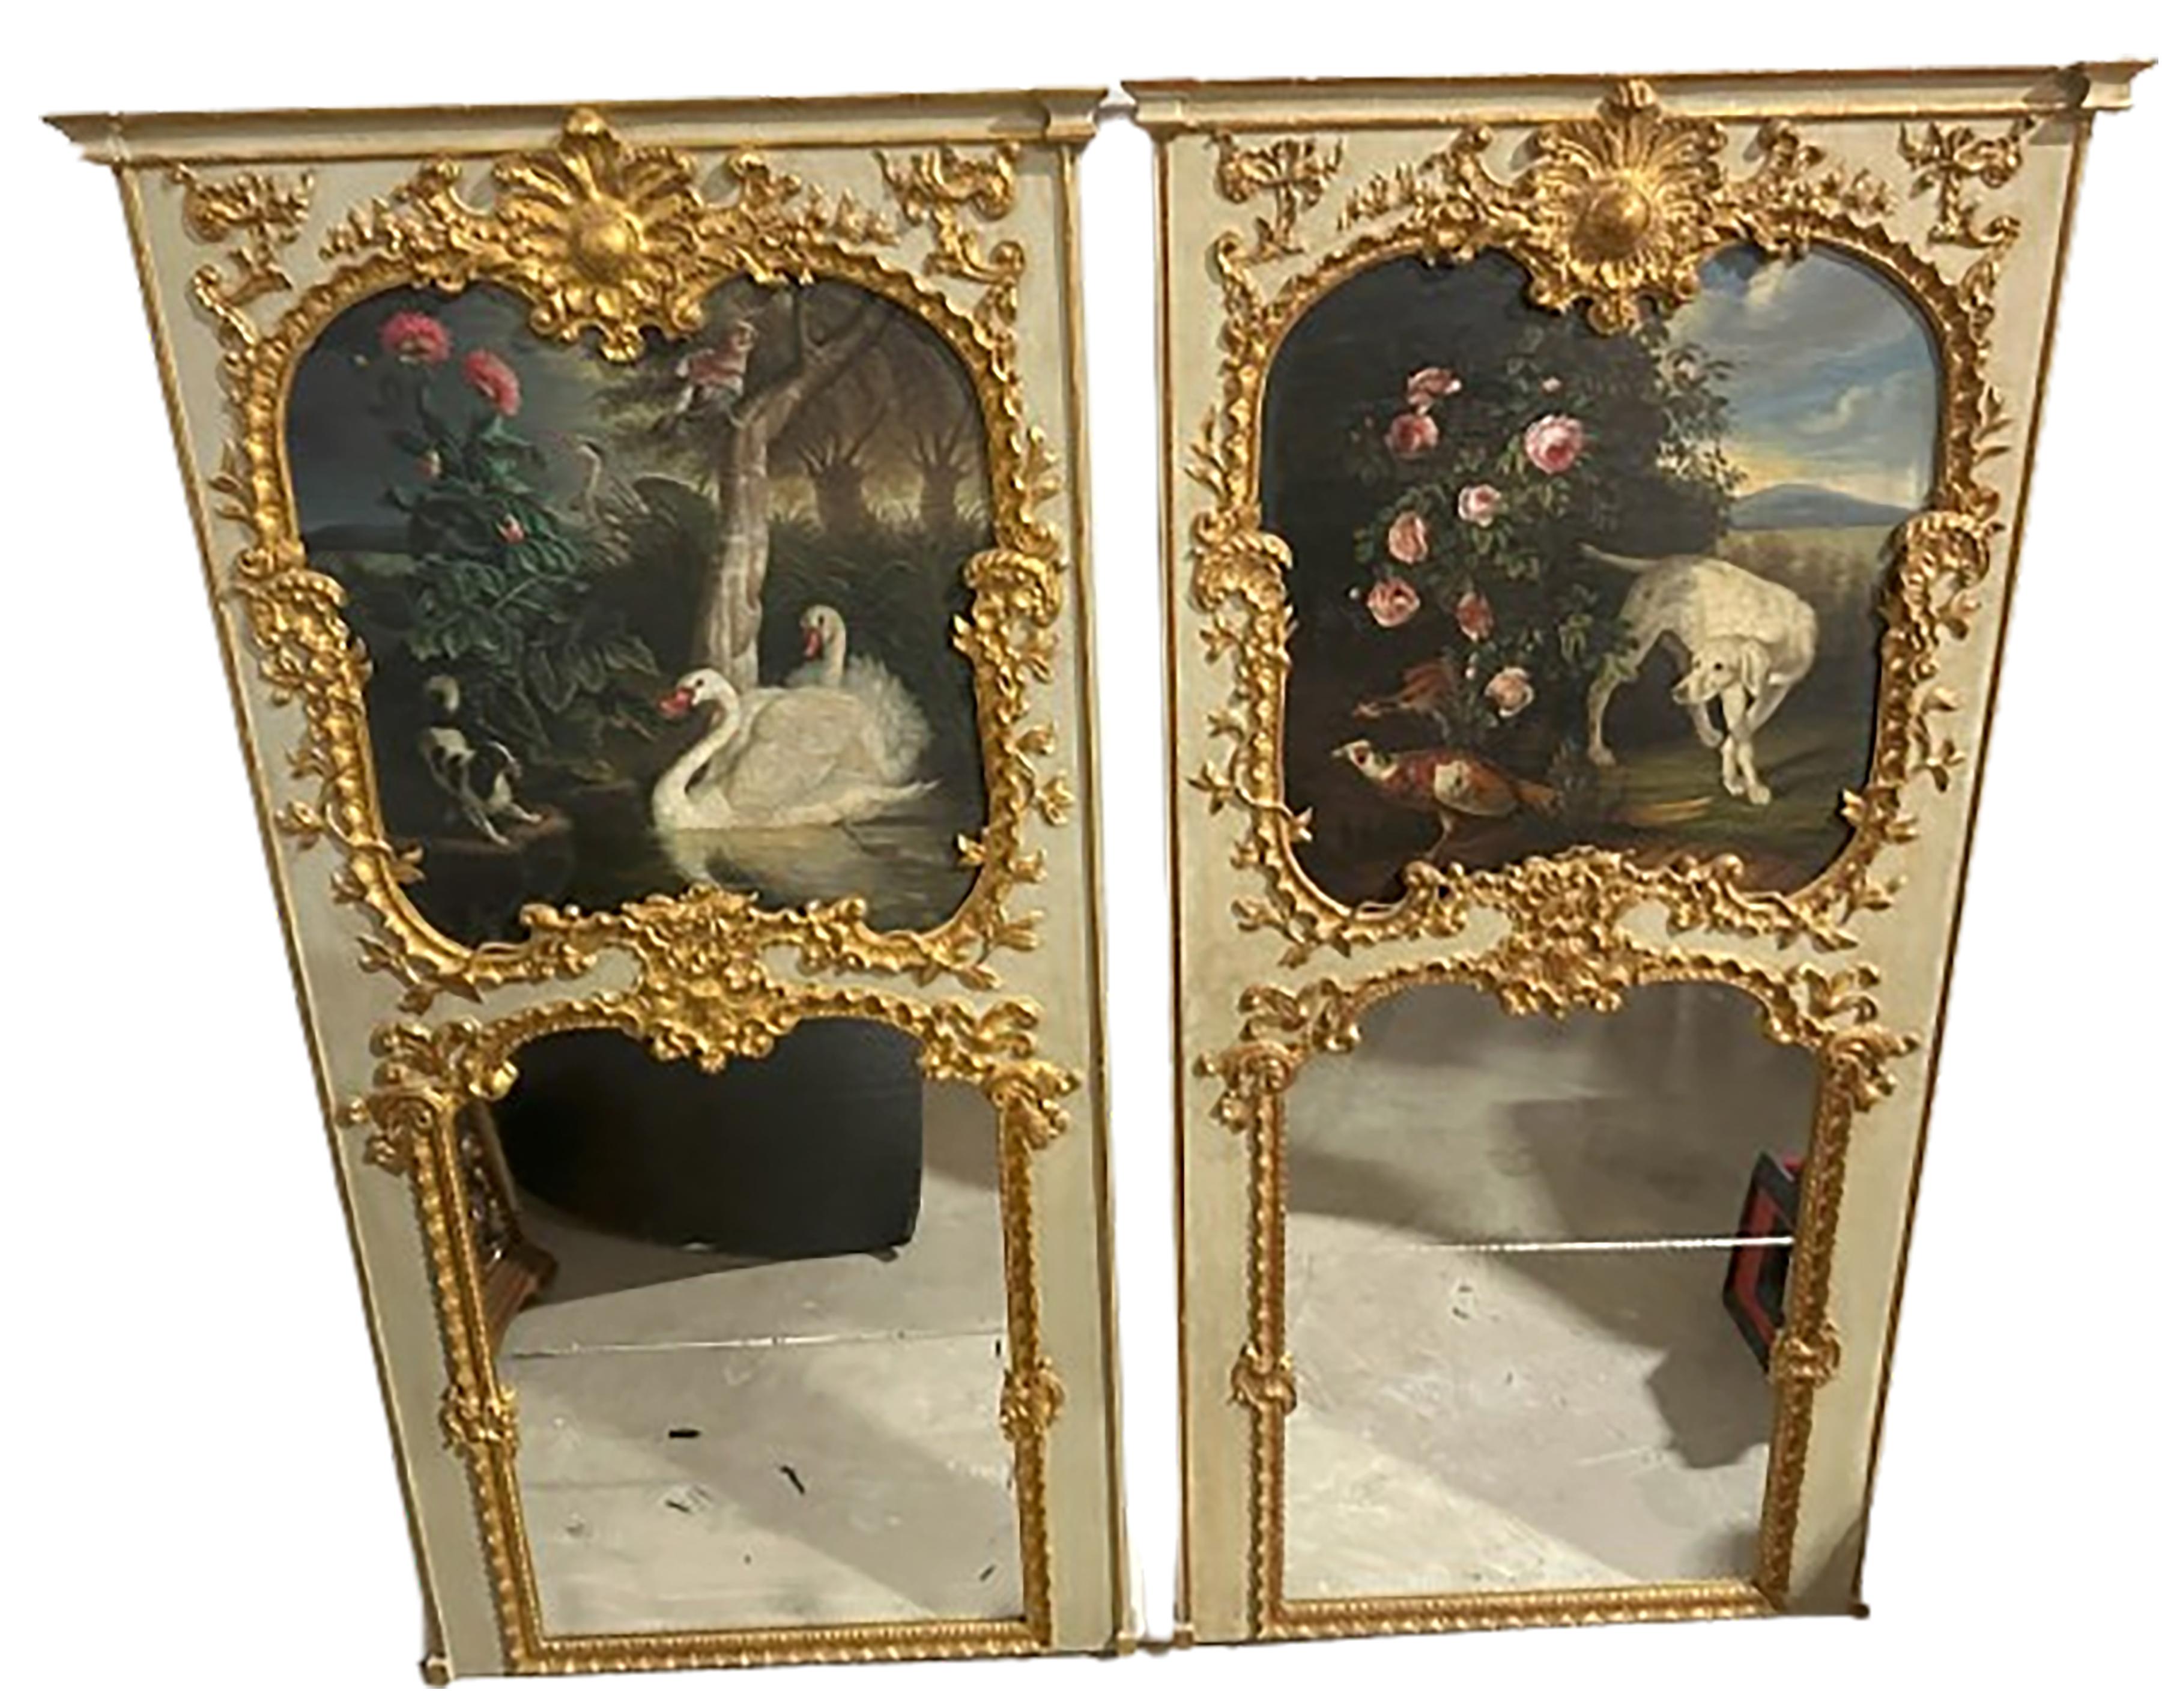 Ein exquisites Paar von Trumeau-Spiegeln. Verspiegeltes Glas auf den unteren Hälften der beiden. Die oberen Hälften enthalten ein handgemaltes Diptychon mit einer pastoralen Szene. Dazu gehört ein Hund auf der rechten Seite, der auf ein Schwanenpaar